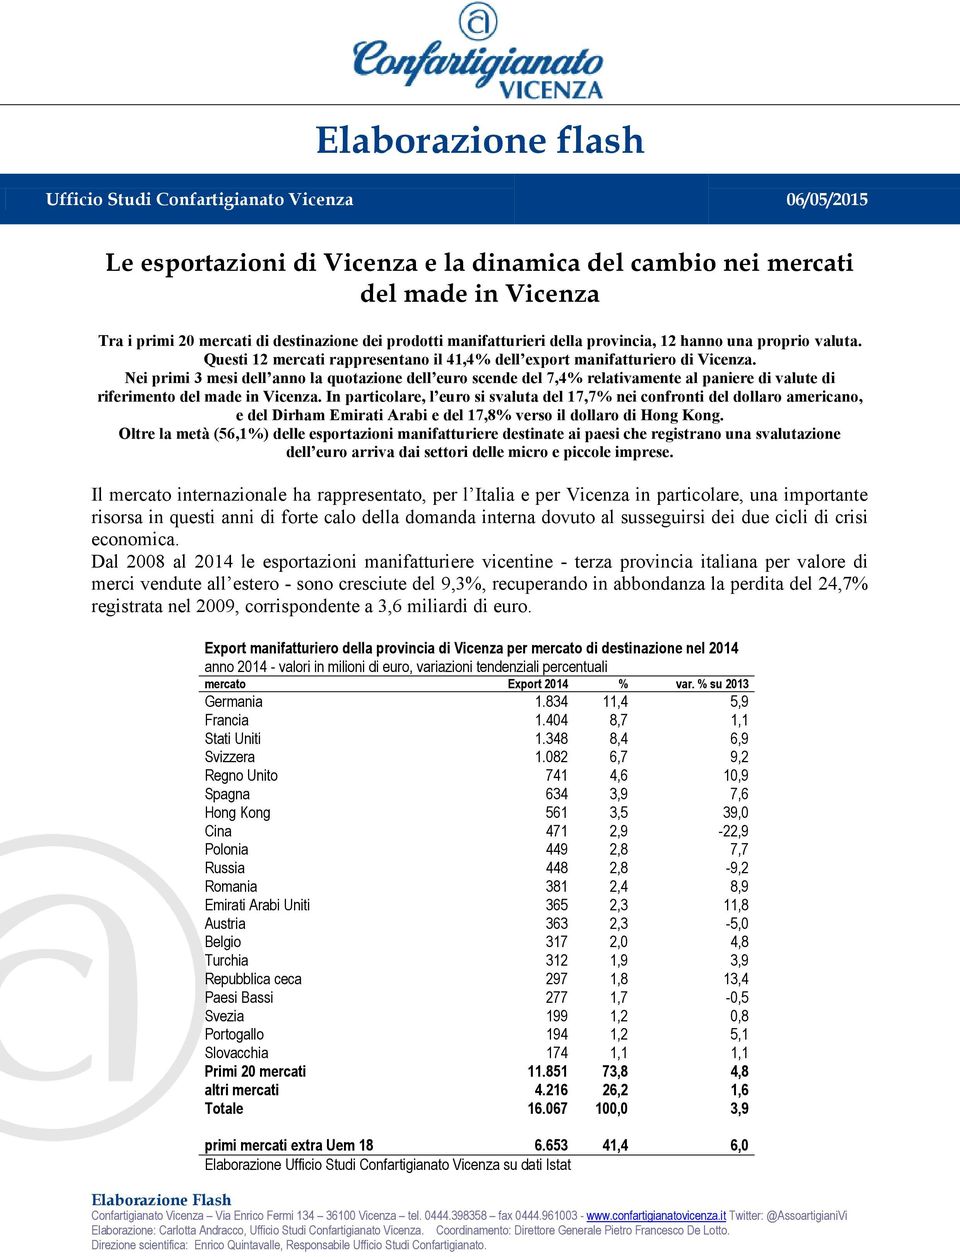 Nei primi 3 mesi dell anno la quotazione dell euro scende del 7,4% relativamente al paniere di valute di riferimento del made in Vicenza.